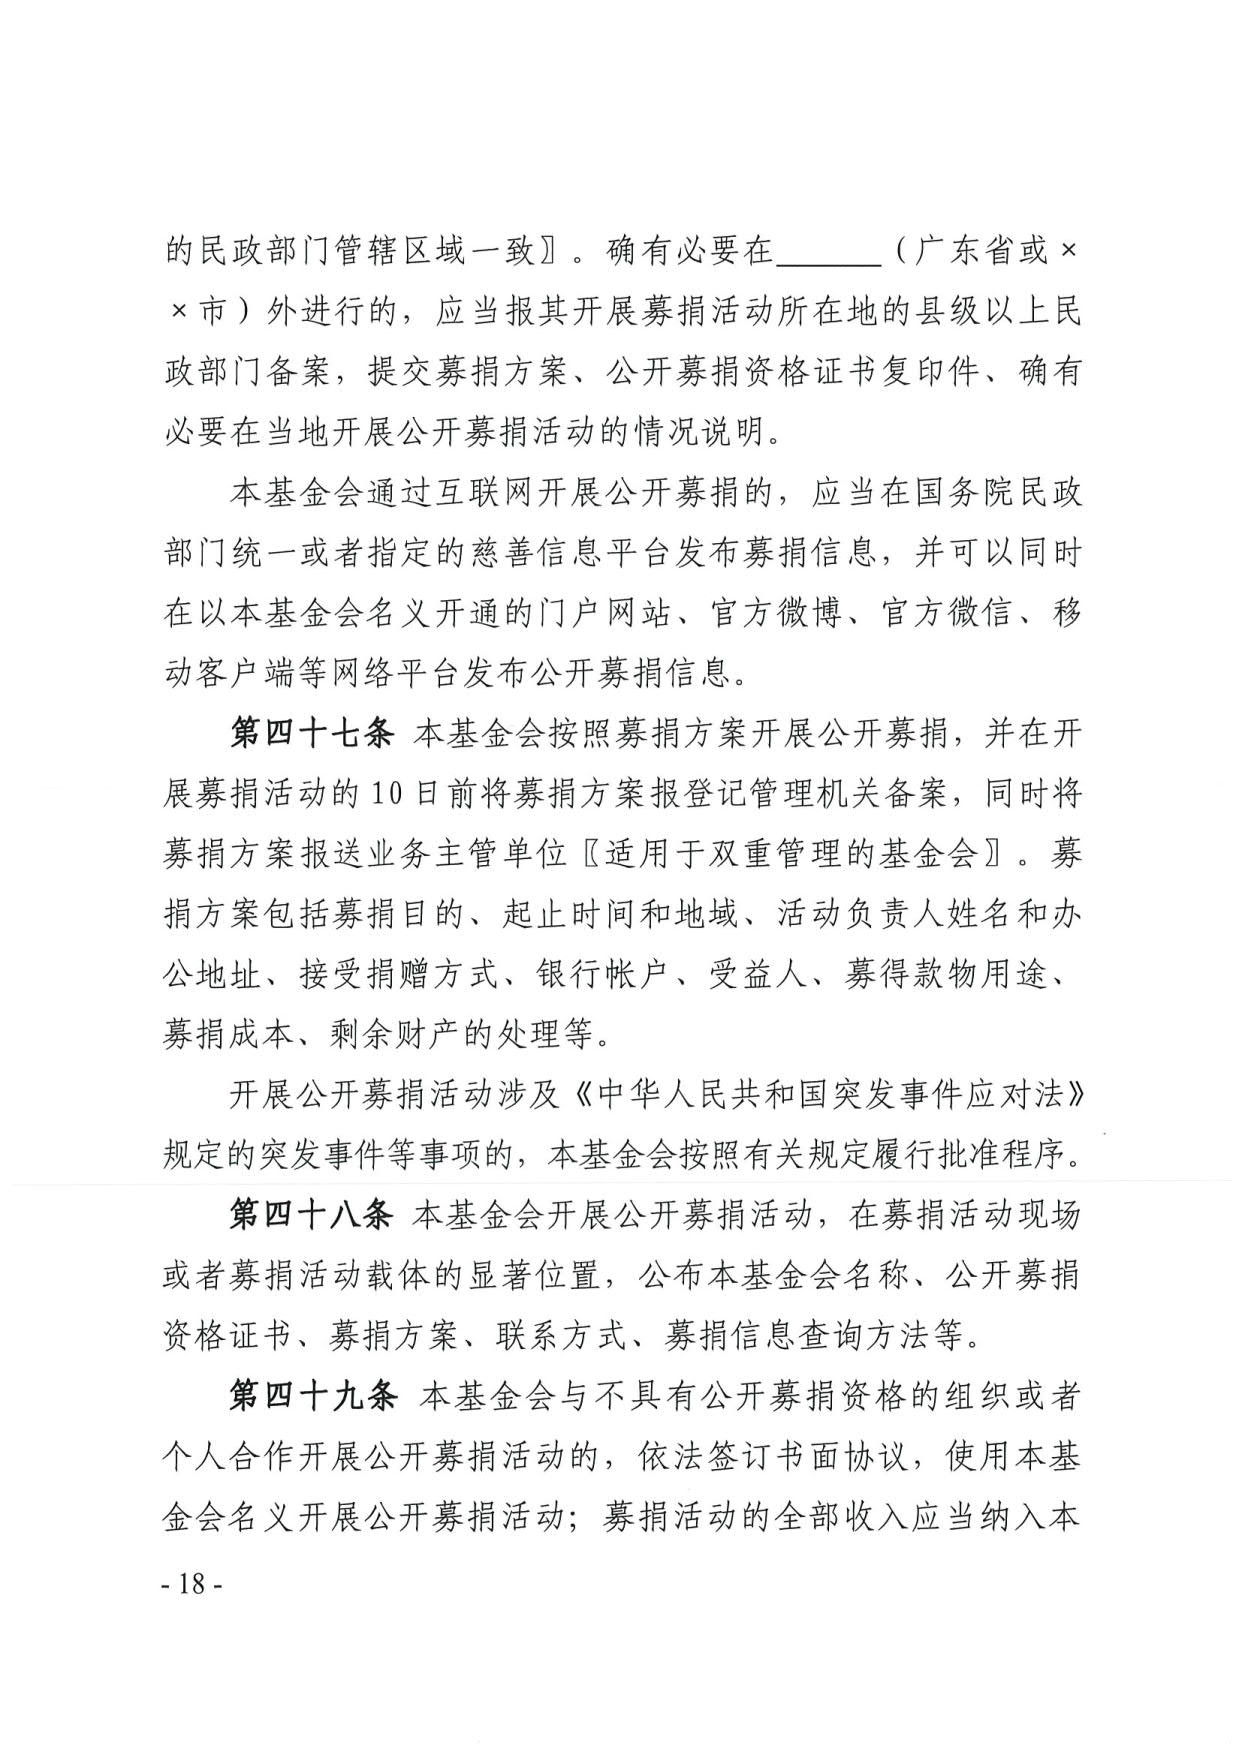 广东省民政厅关于印发《广东省基金会章程示范文本》的通知(4)_18.jpg